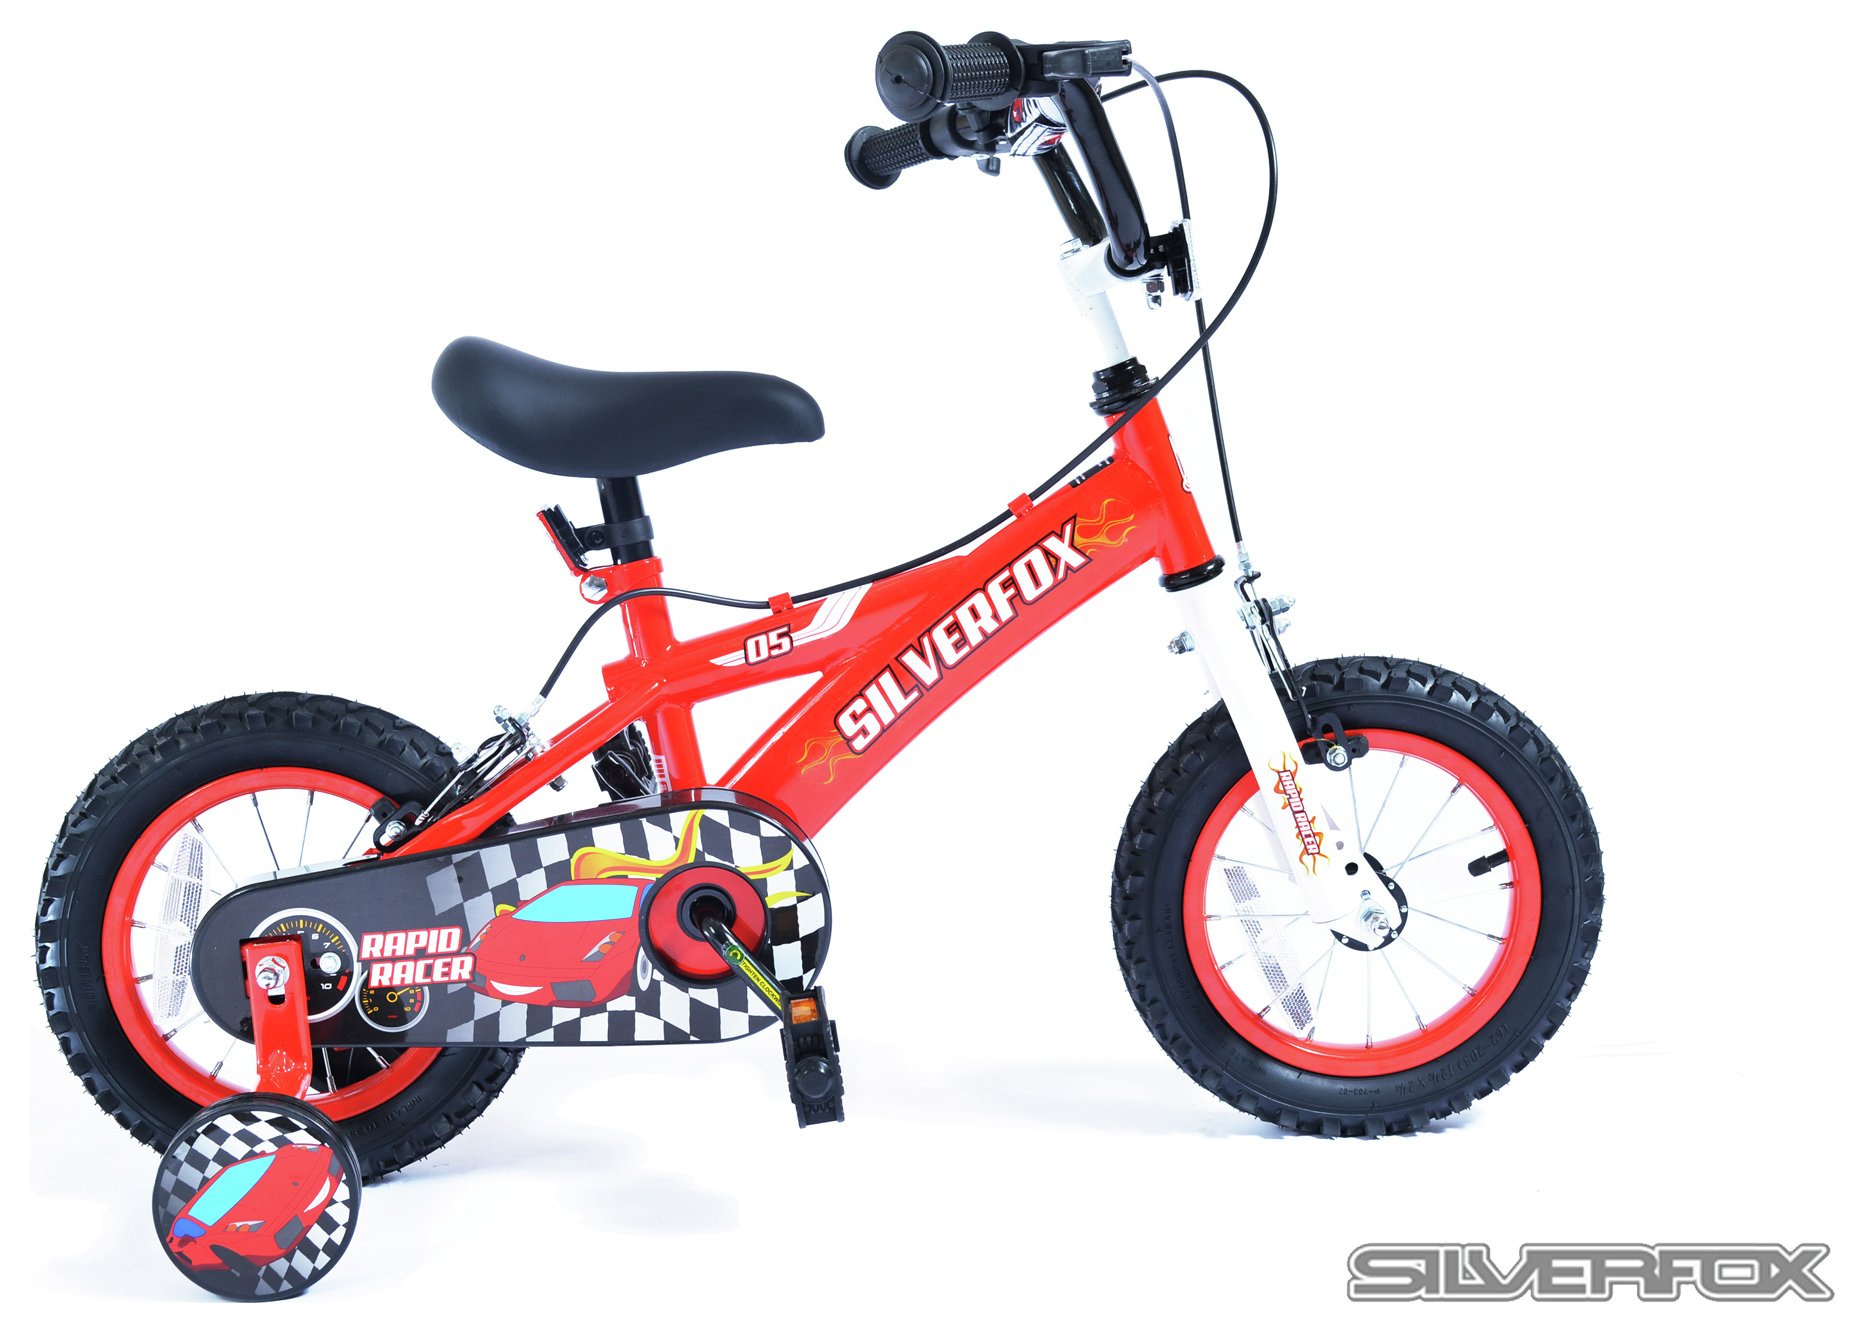 Silverfox Rapid Racer 12 Inch Kids Bike